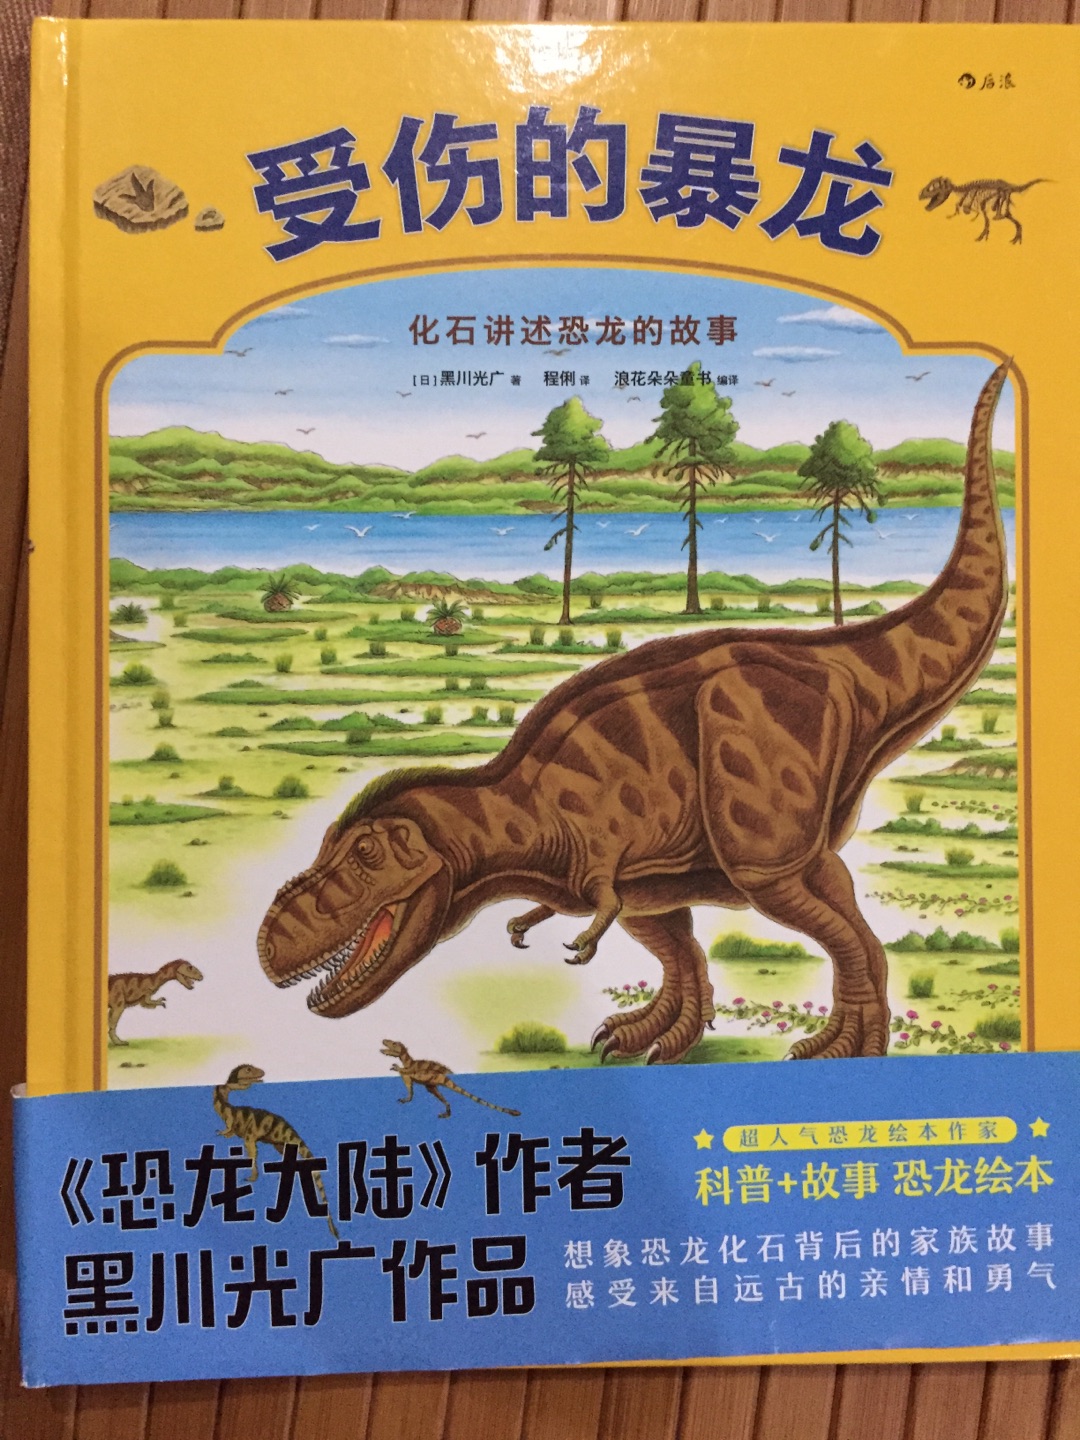 在买书还是蛮方便的，书也蛮多的，就是价格要多关注，才能买的合适价格书。儿子喜欢恐龙，也喜欢恐龙大陆，也很喜欢这本恐龙书。